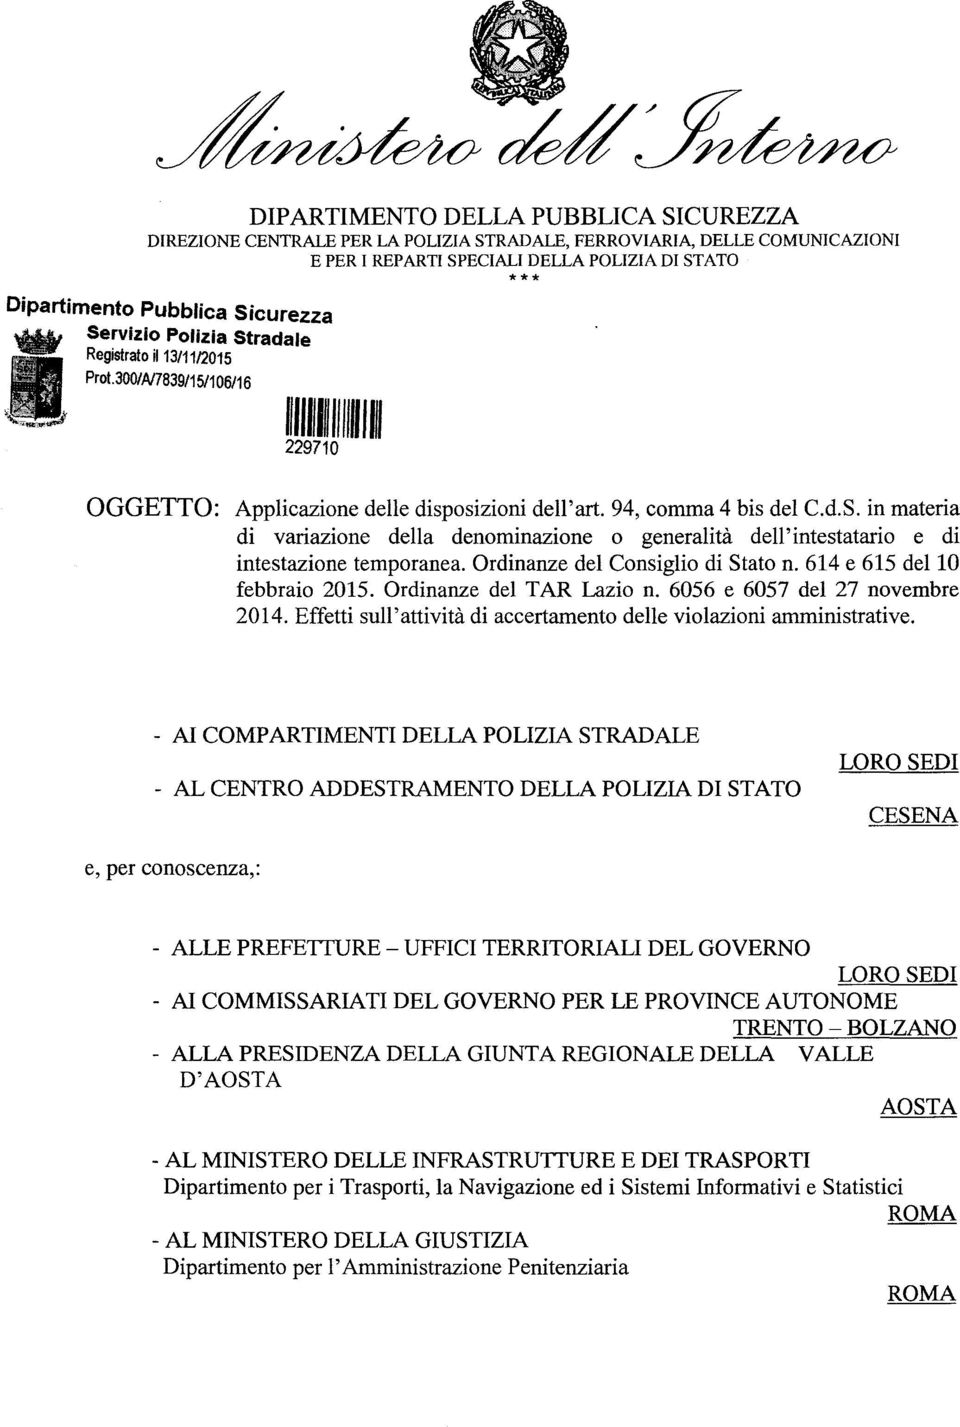 Ordinanze del Consiglio di Stato n. 614 e 615 dello febbraio 2015. Ordinanze del TAR Lazio n. 6056 e 6057 del 27 novembre 2014. Effetti sull'attività di accertamento delle violazioni amministrative.